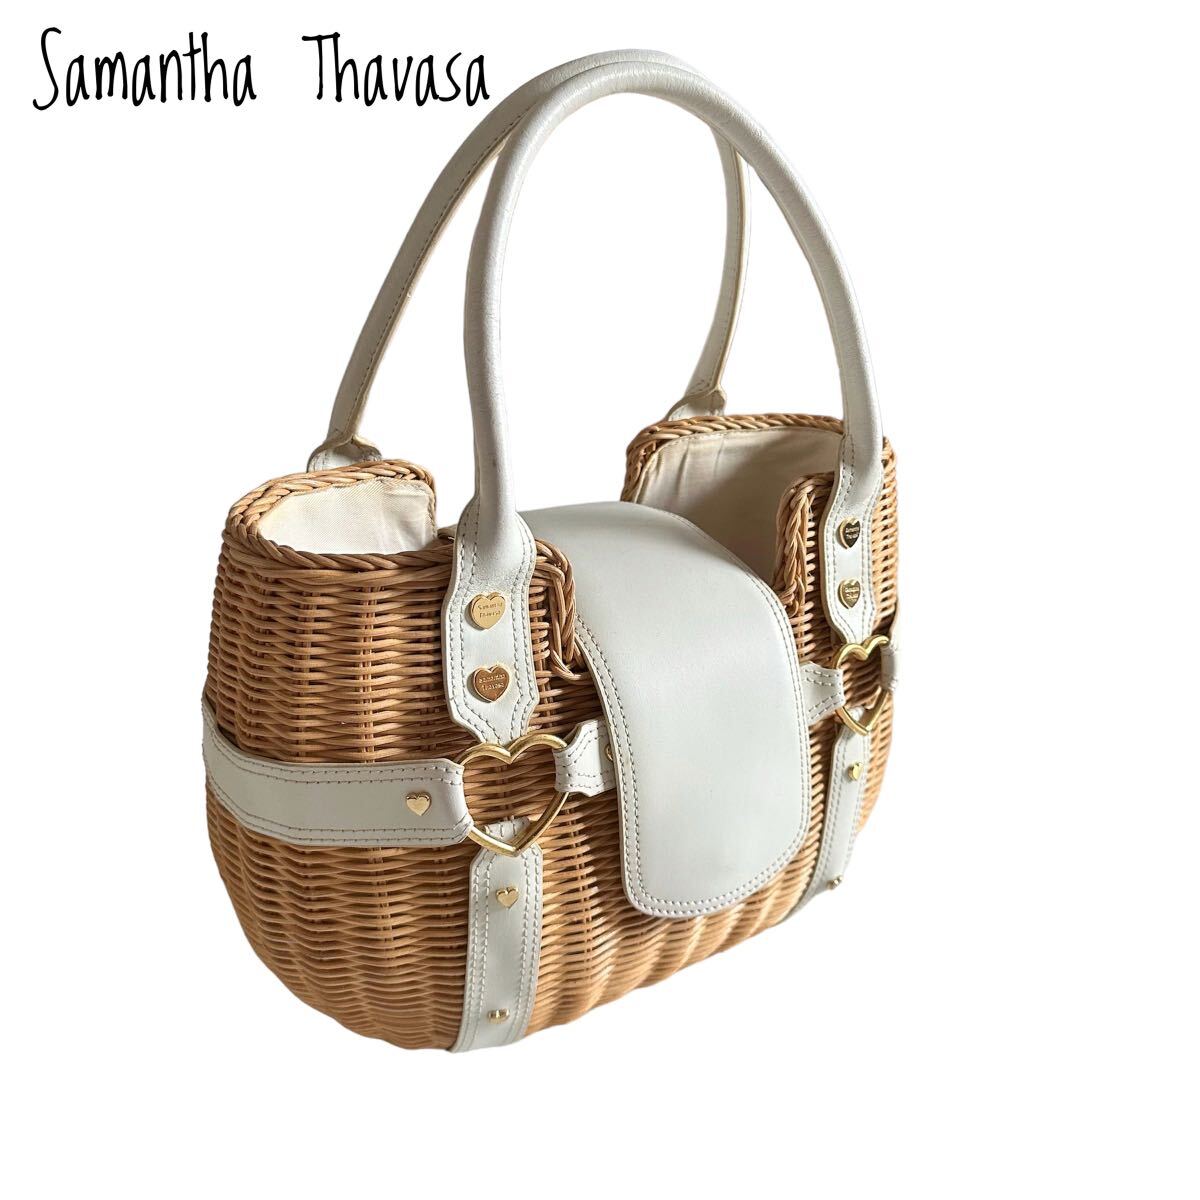 Samantha Thavasa Samantha Thavasa basket bag handbag 